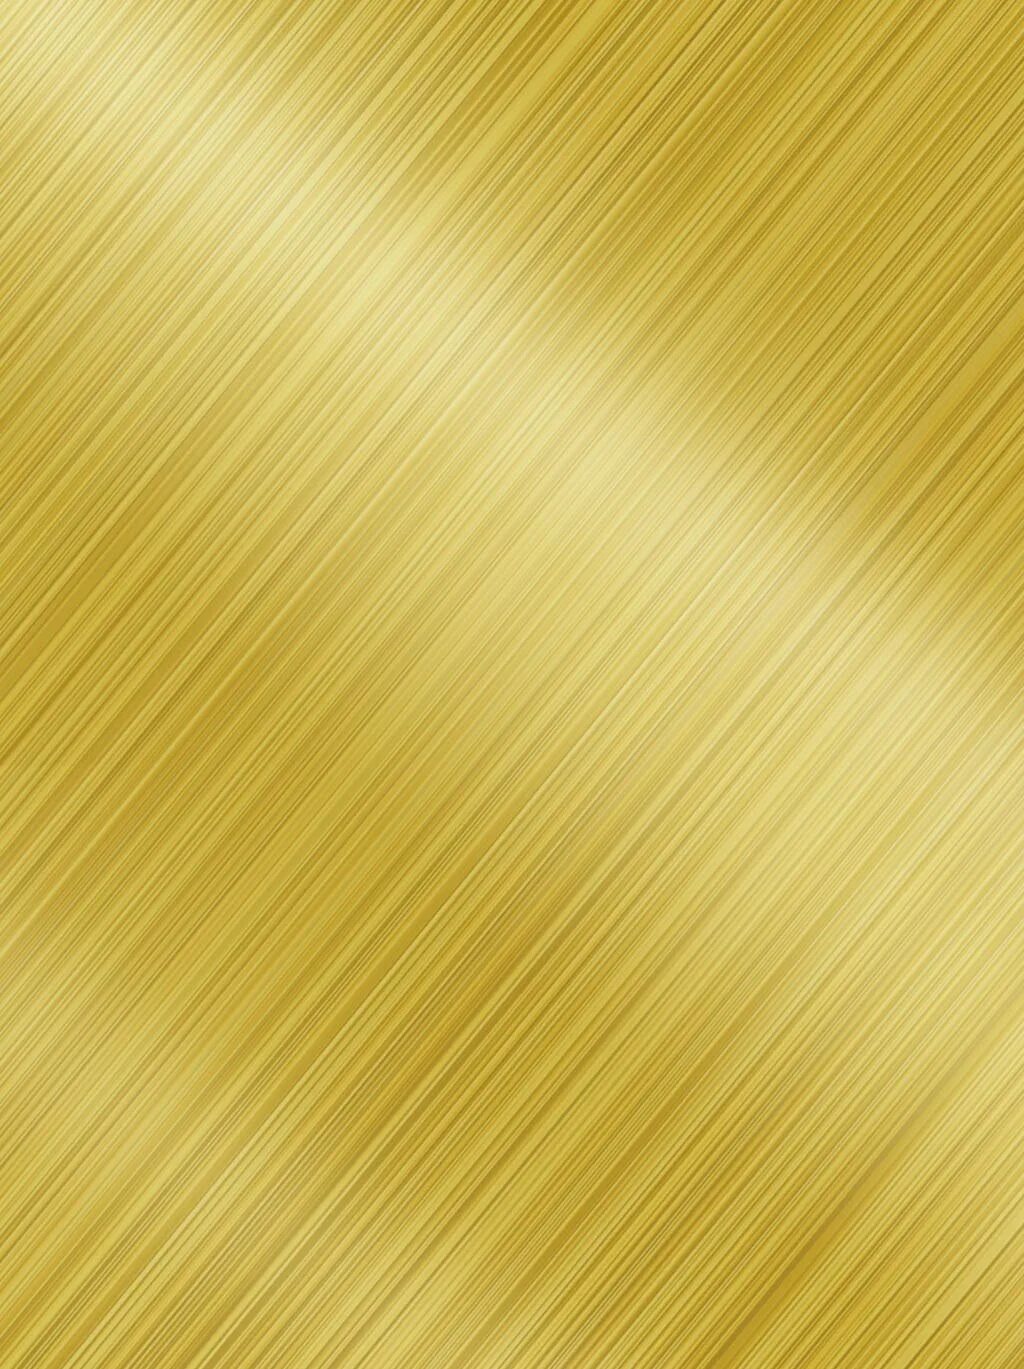 Металлической золото цвет. Золото металлик lx19240. Золото фон. Золото текстура. Золотой цвет.